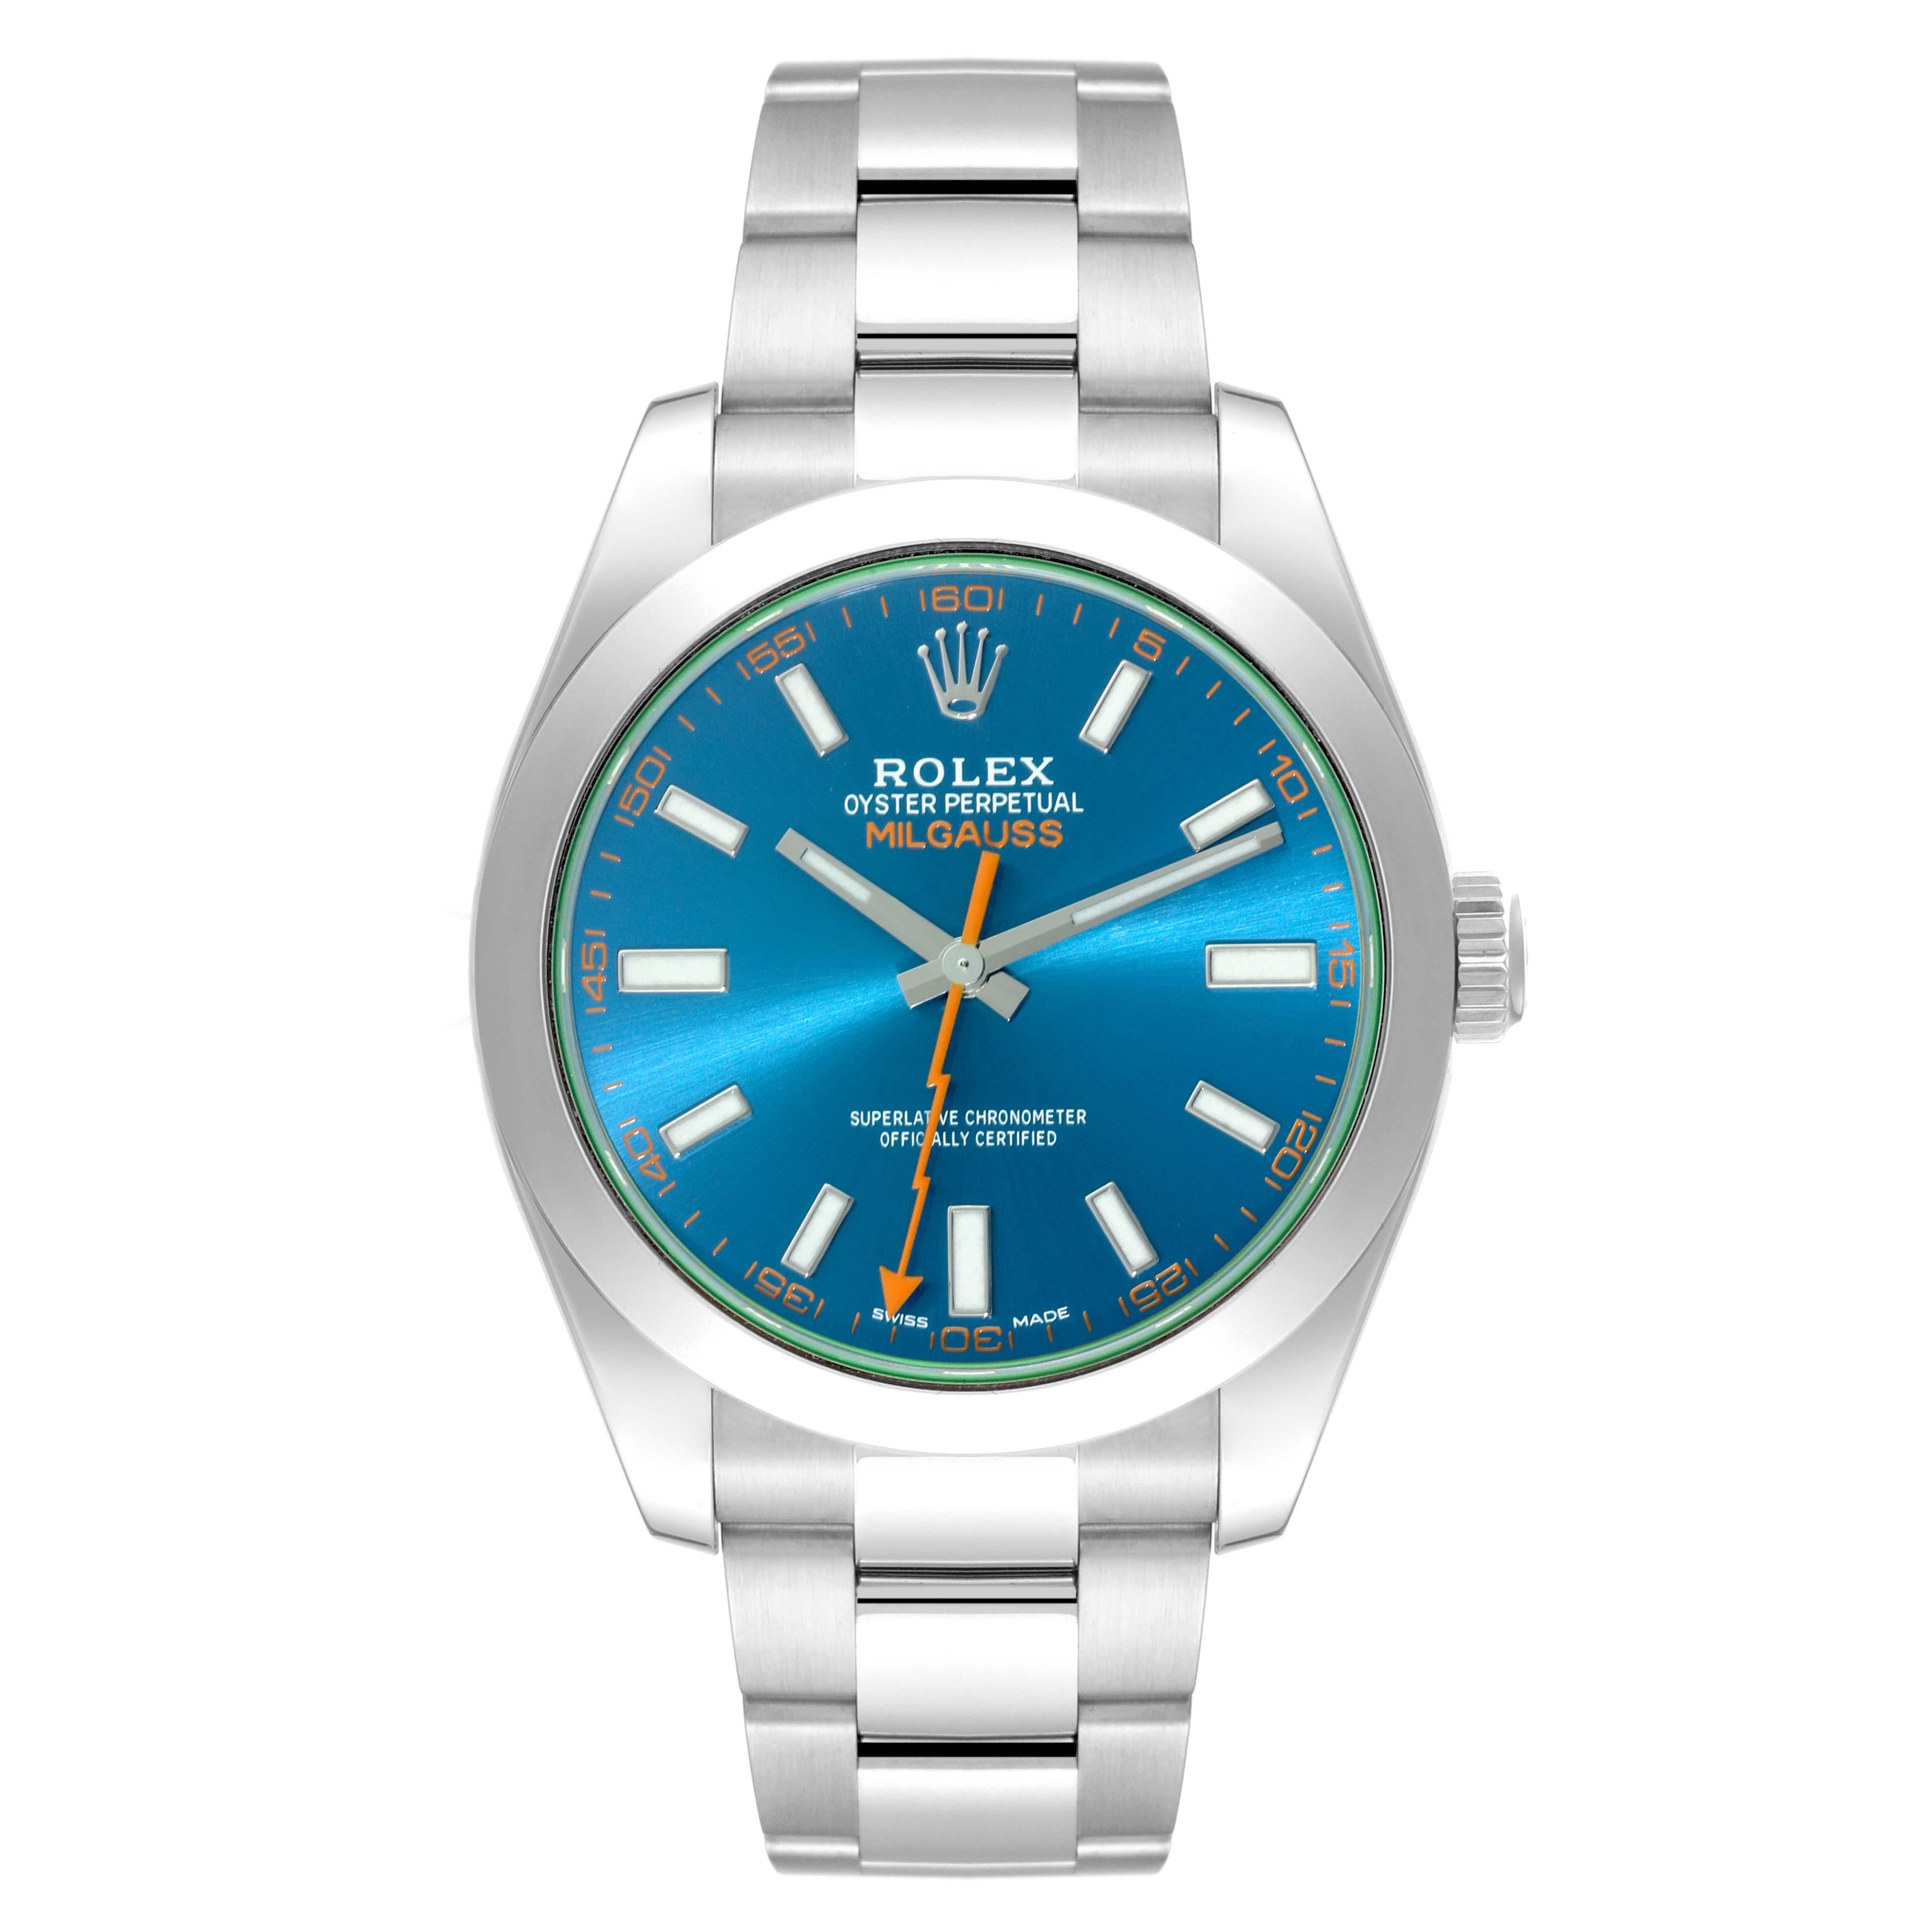 Rolex Milgauss Blue Dial Green Crystal Steel Mens Watch 116400GV Box Card. Mouvement automatique à remontage automatique, officiellement certifié chronomètre. Boîtier en acier inoxydable de 40,0 mm de diamètre. Lunette lisse en acier inoxydable.